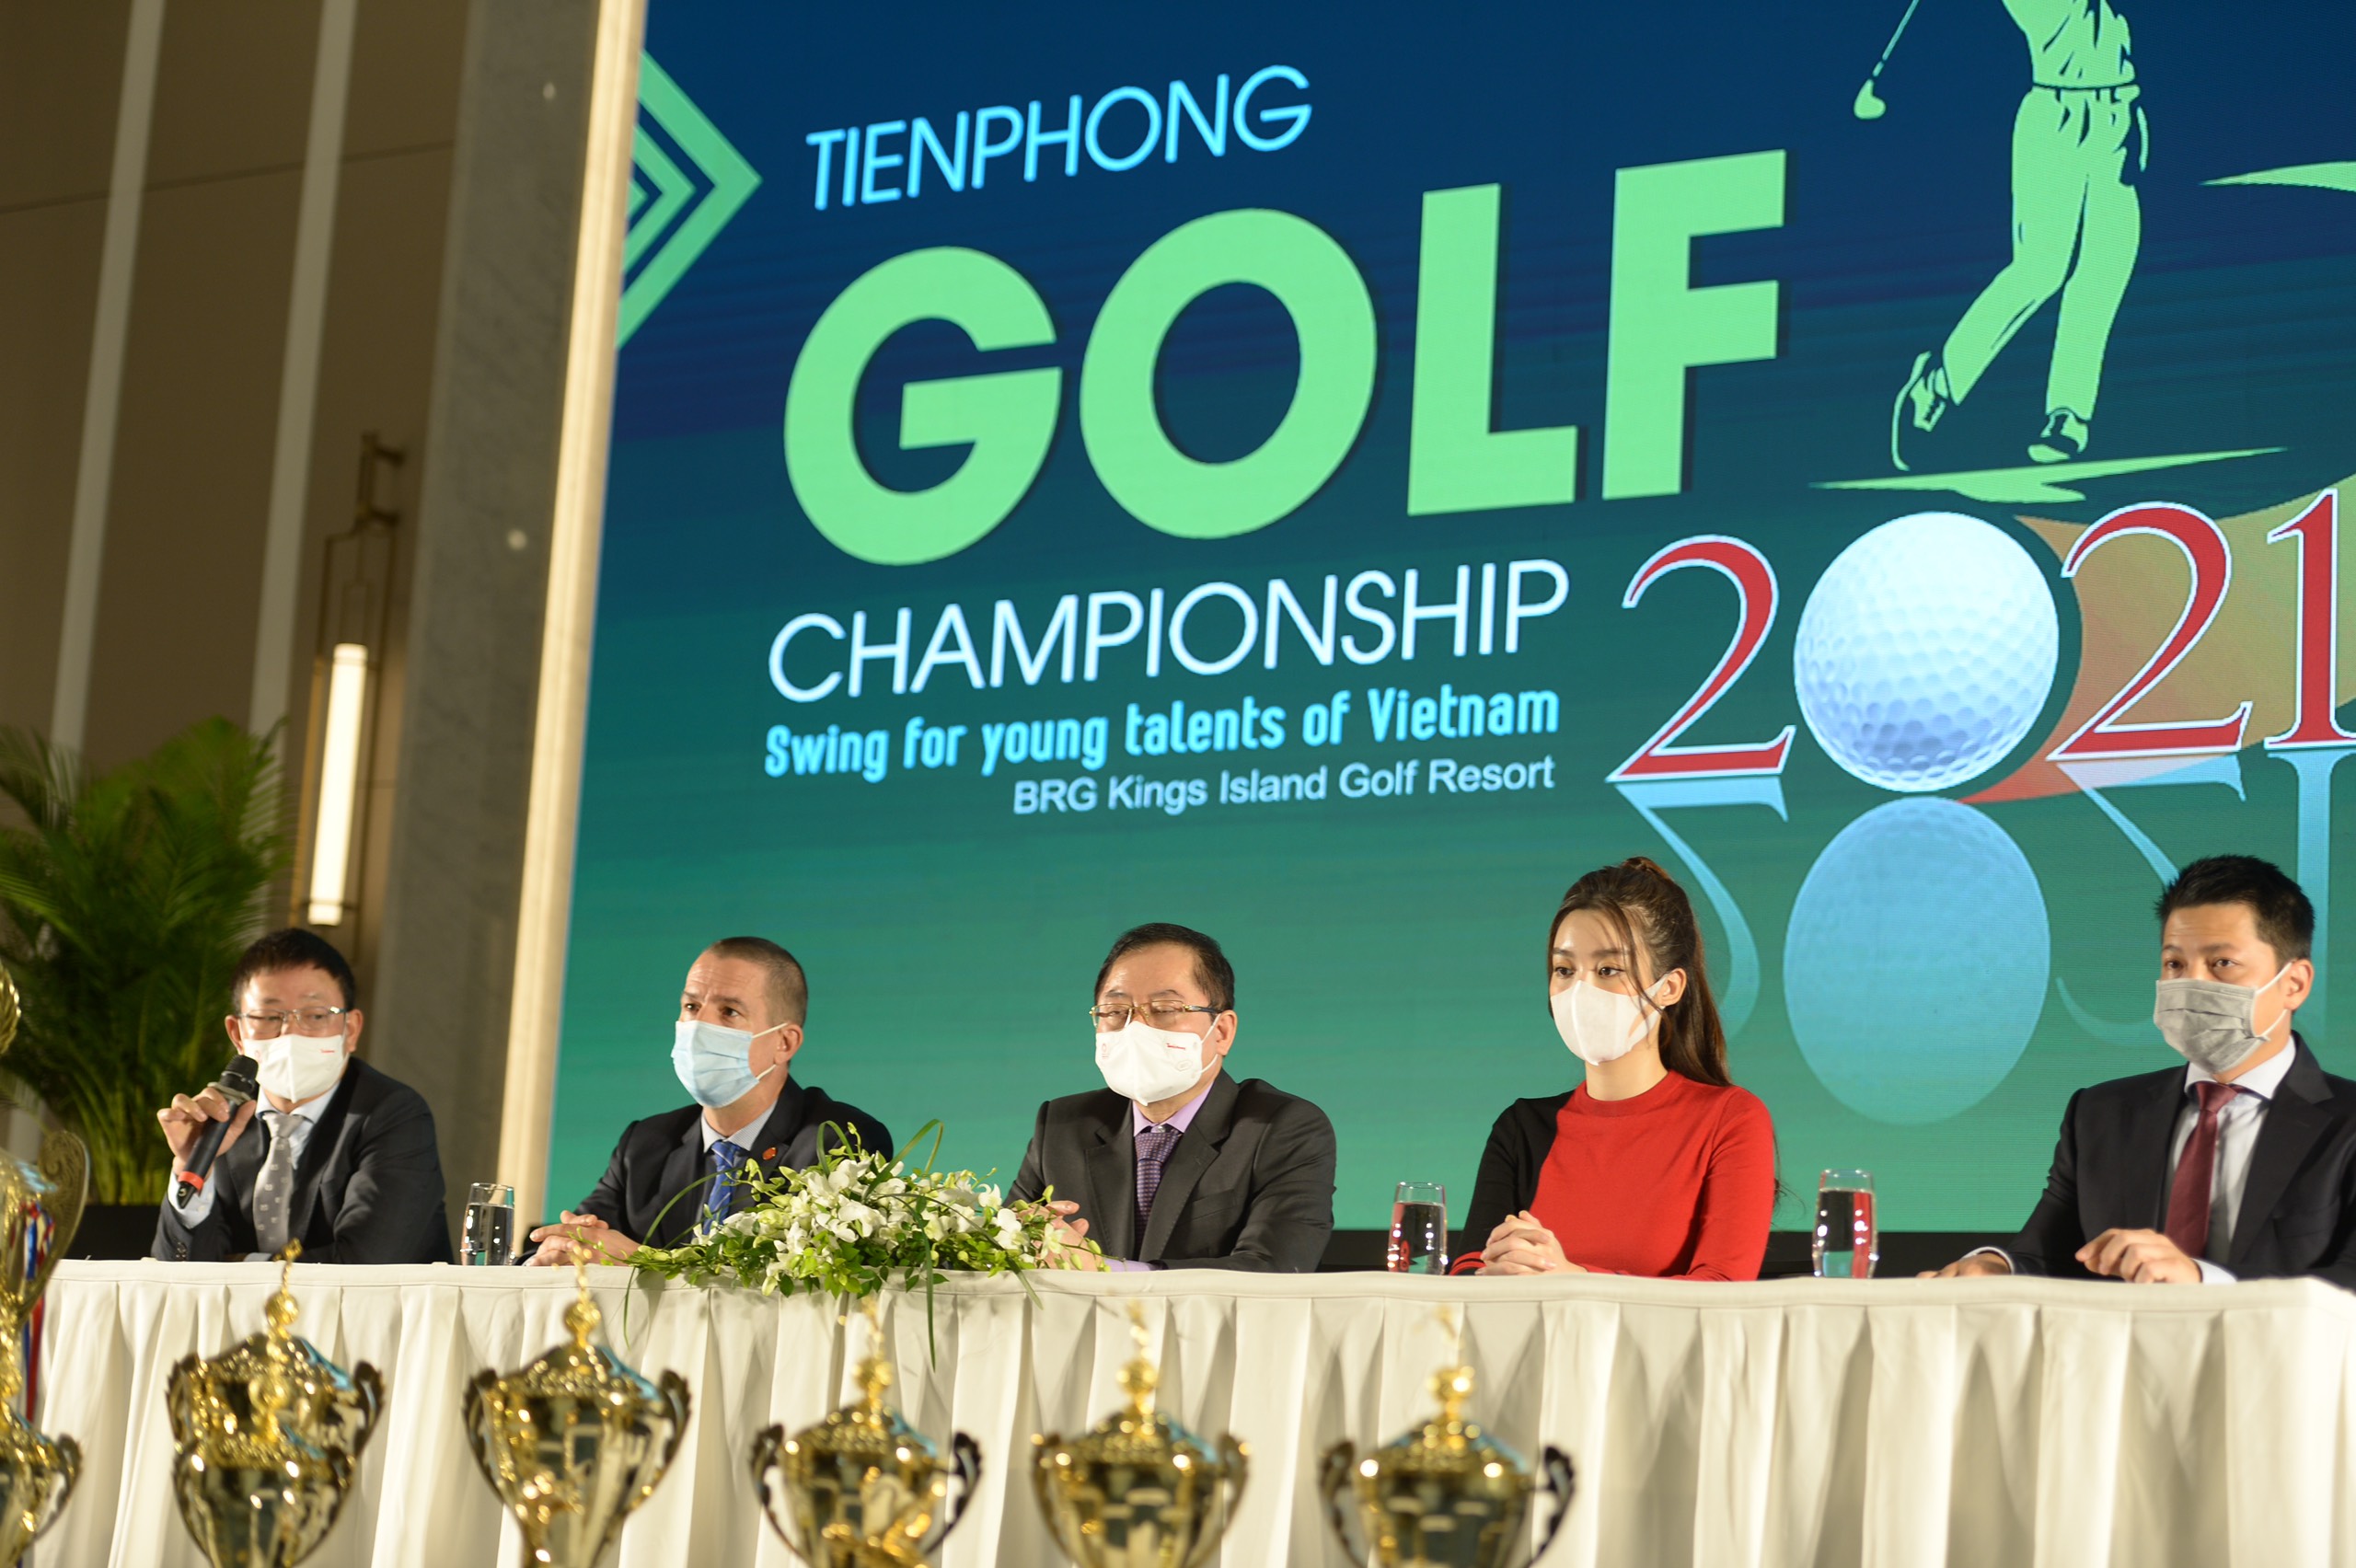 Giải Tiền Phong Golf Championship 2021 hấp dẫn với 3 loại giải thưởng HIO